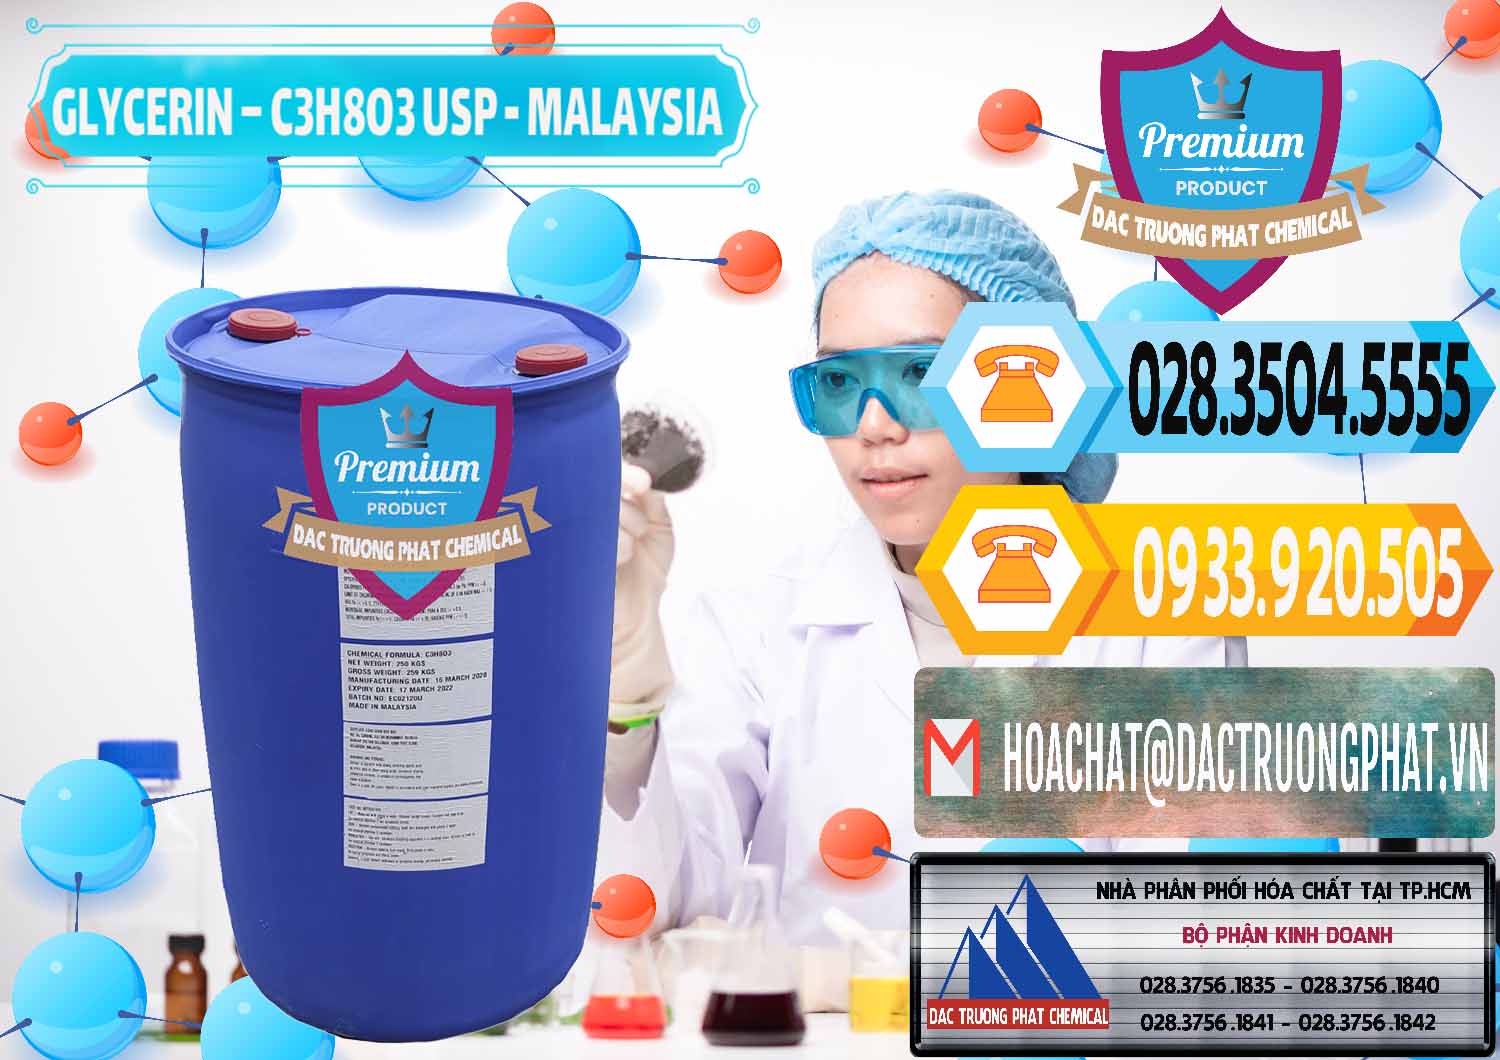 Cung ứng ( bán ) Glycerin – C3H8O3 USP Malaysia - 0233 - Công ty kinh doanh _ cung cấp hóa chất tại TP.HCM - hoachattayrua.net